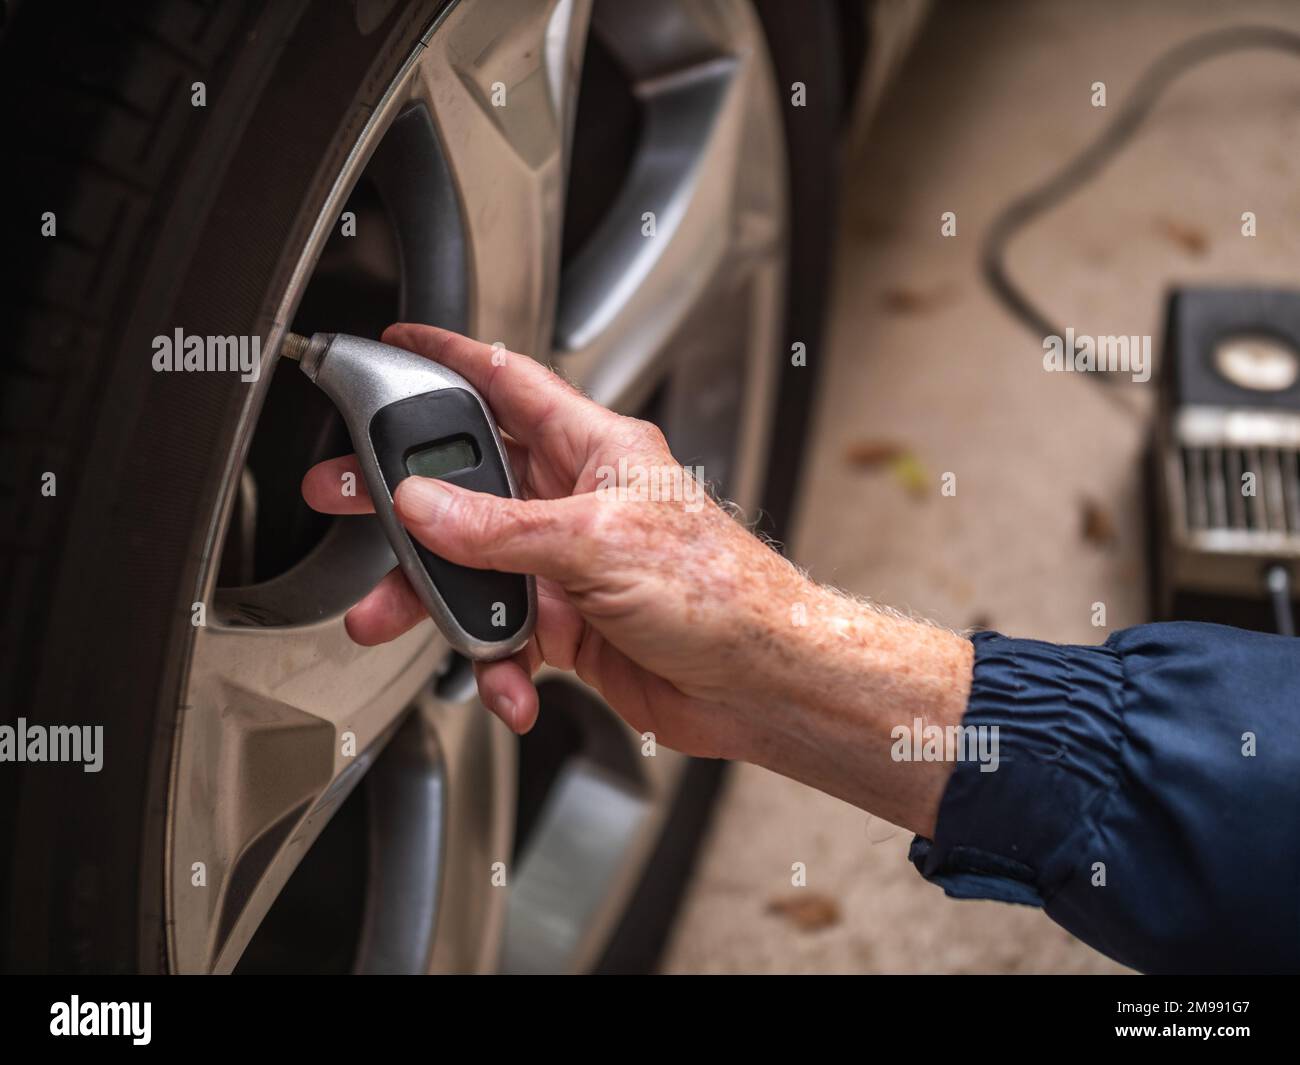 Controllo meccanico degli pneumatici per auto per verificarne il corretto gonfiaggio. Uomo che utilizza un manometro digitale per controllare la pressione dell'aria degli pneumatici della vettura. Foto Stock